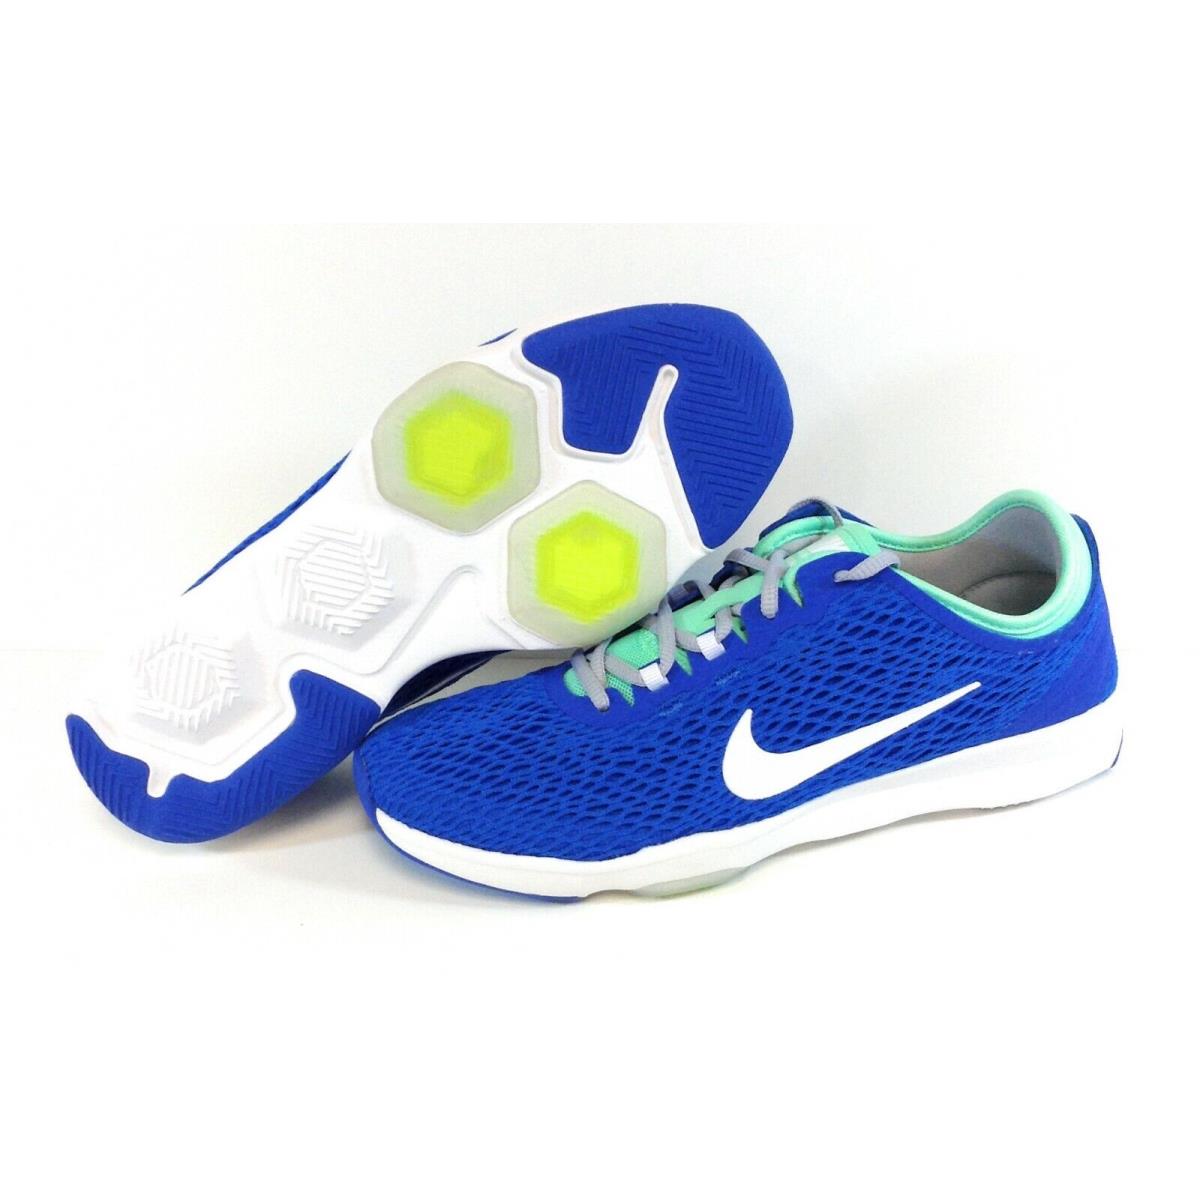 Womens Nike Zoom Fit 704658 401 Soar Blue White 2015 Deadstock Sneakers Shoes - Blue